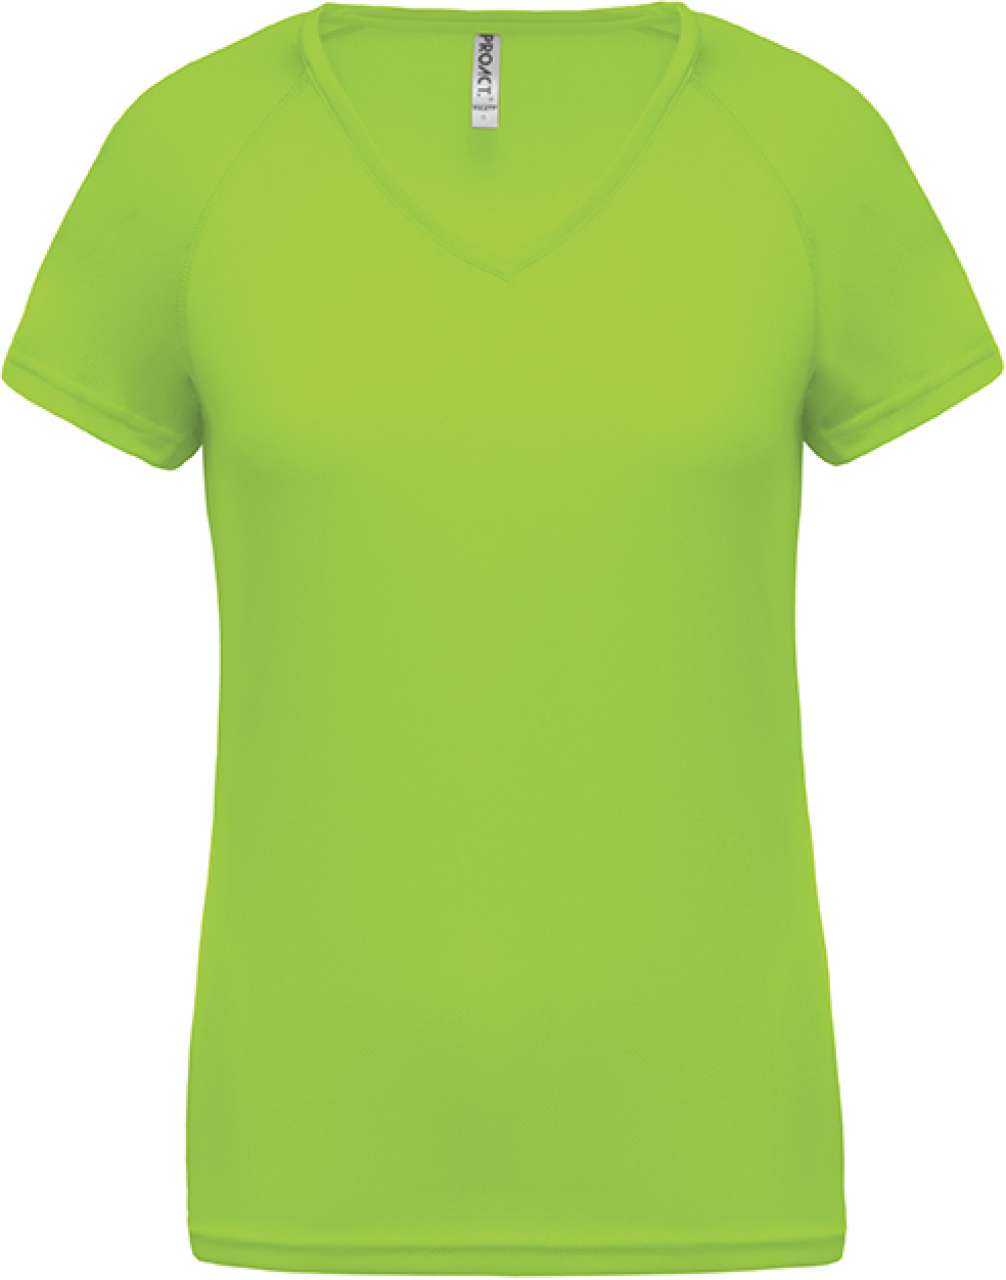 Proact Damen Sport T-Shirt Fitness Training Short Sleeve Jersey Shirt